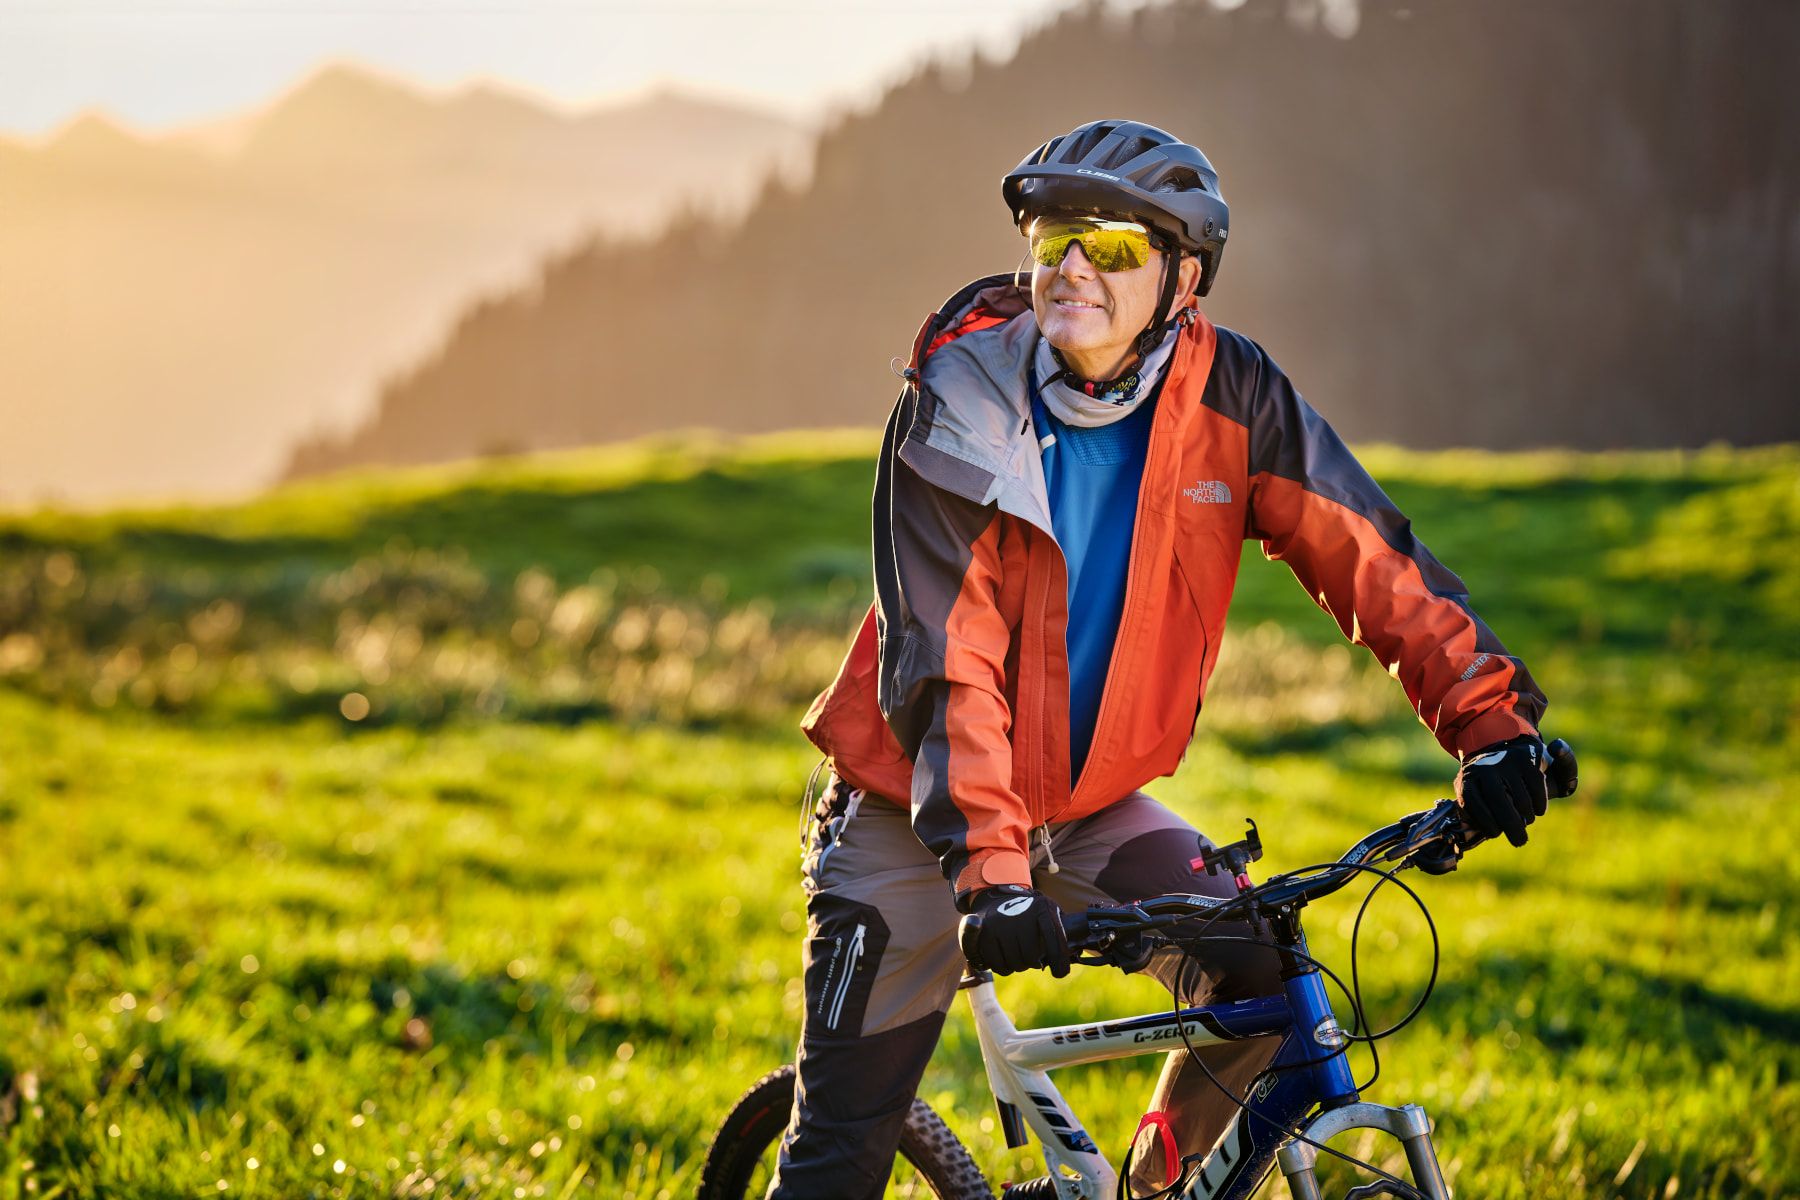 Sportbrillen – Ein Mann sitz bei schönstem Wetter auf seinem Fahrrad und geniesst die sportliche Aktivität in der Natur.